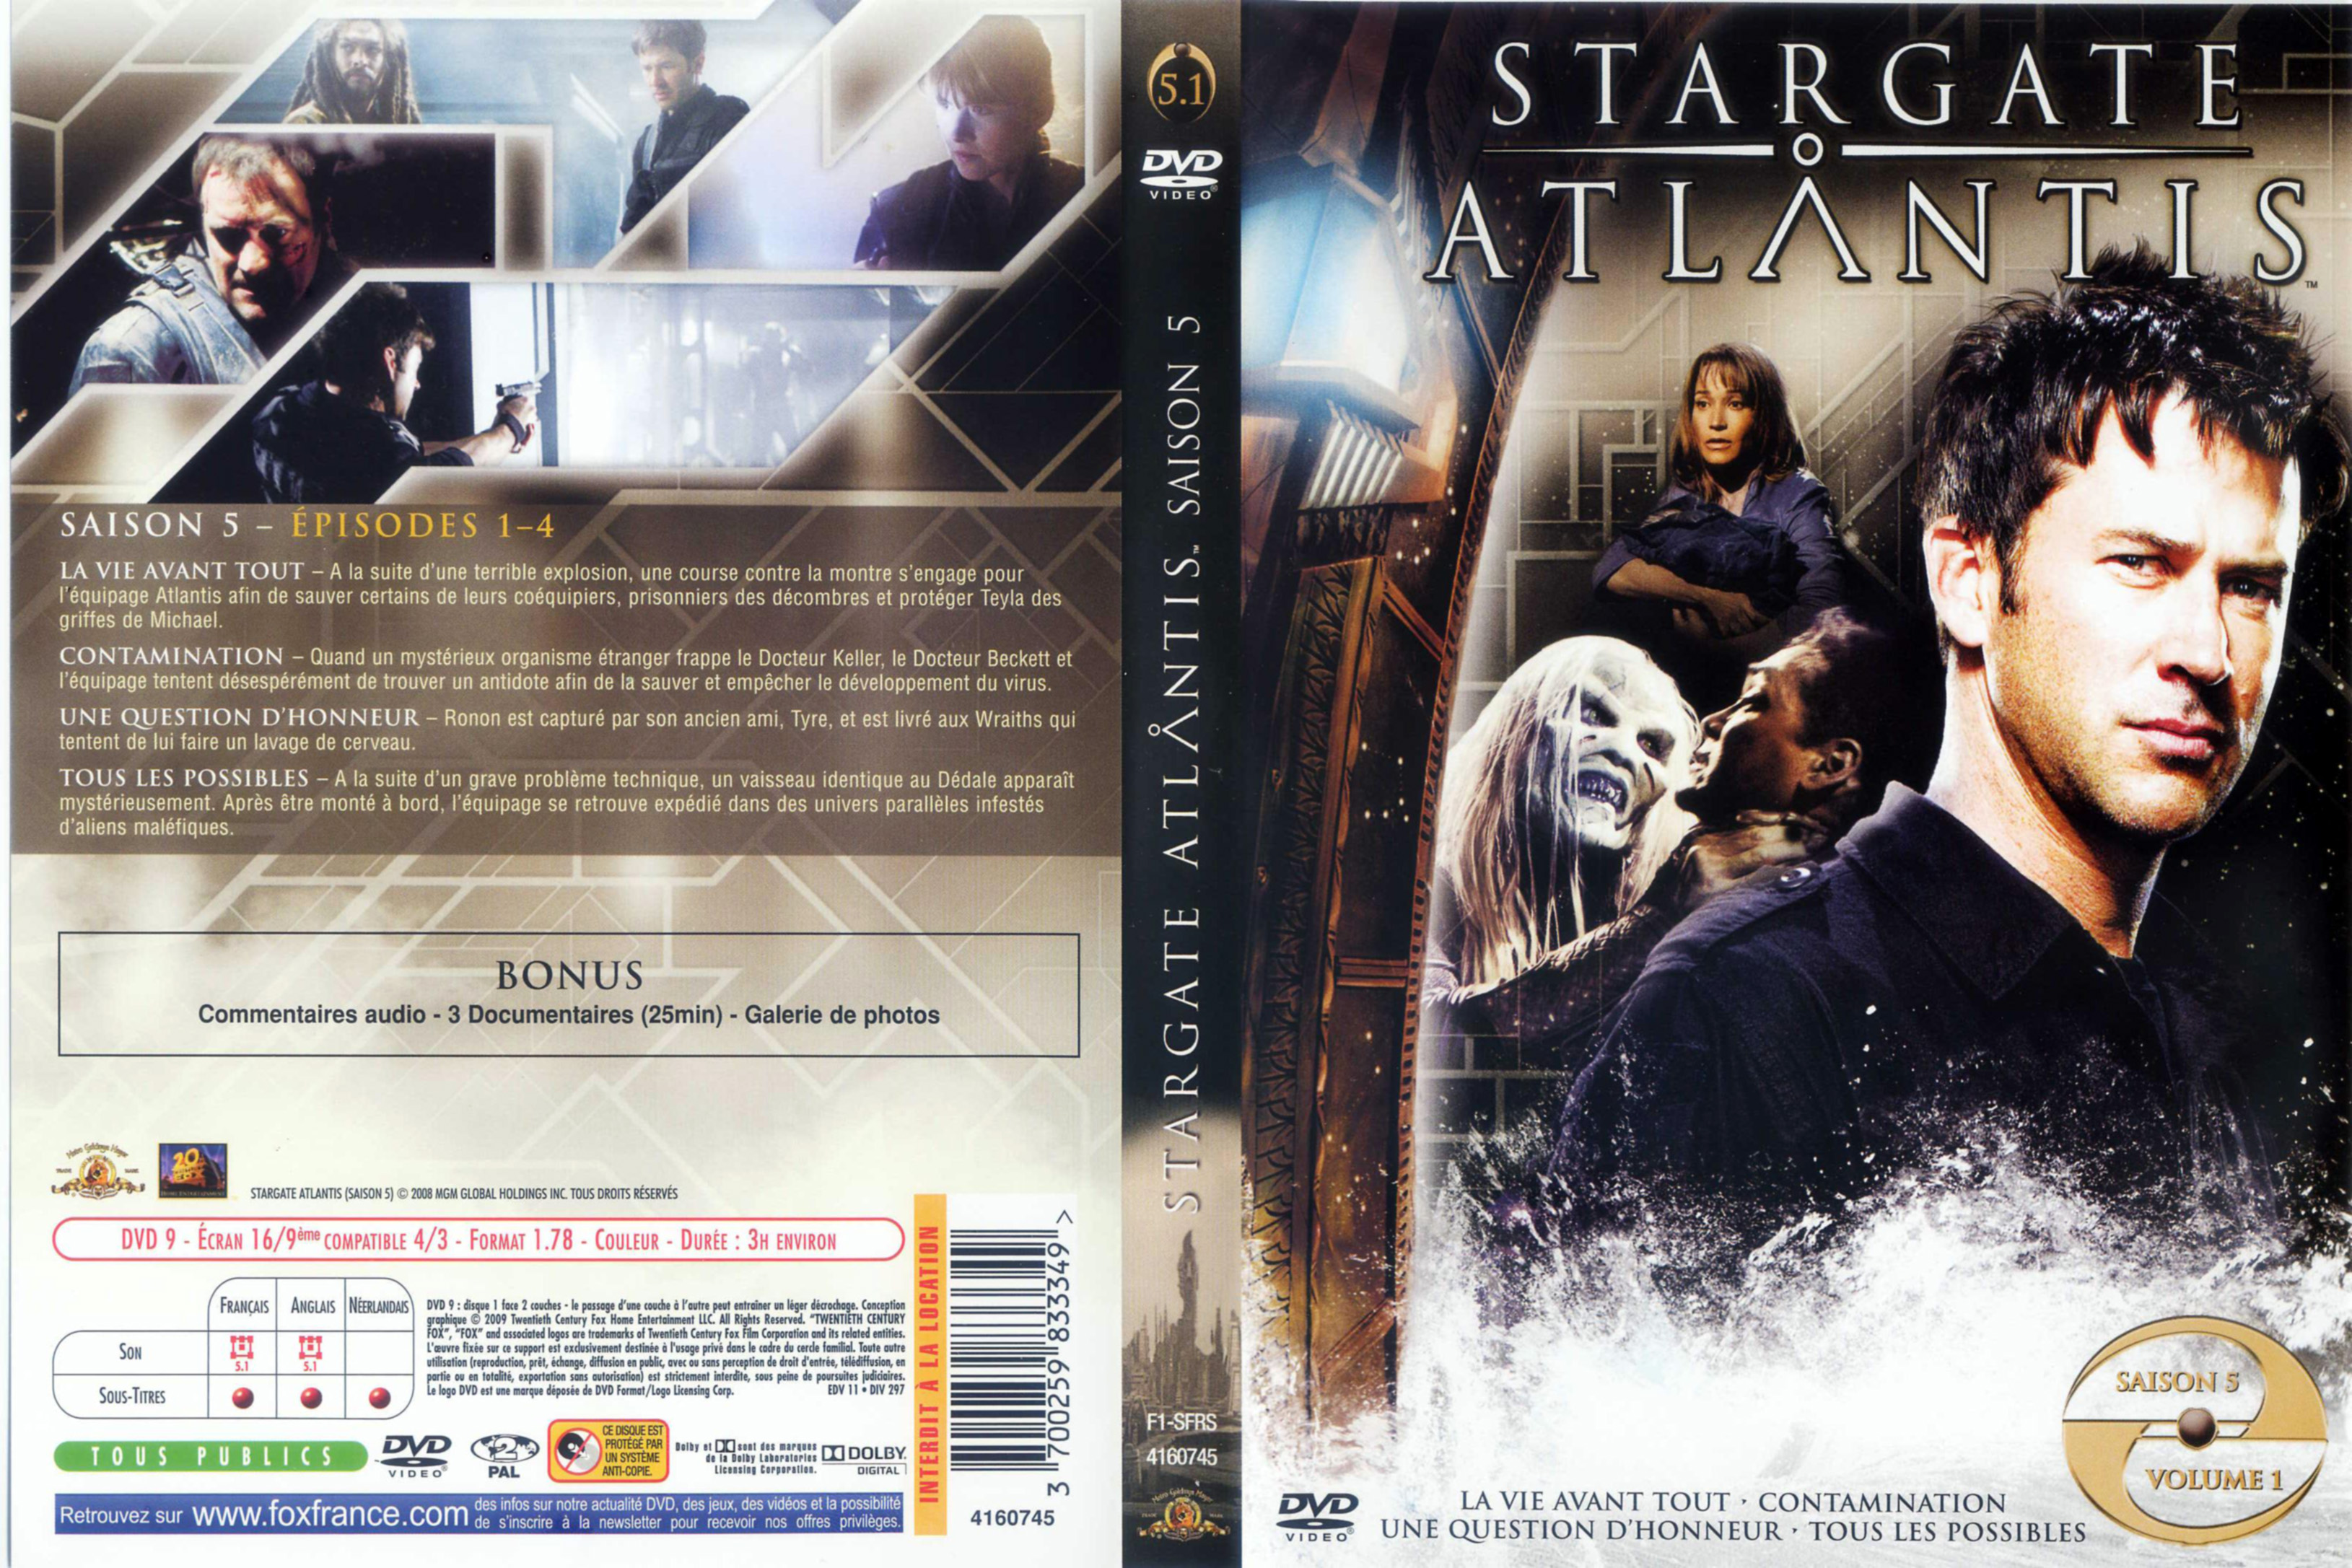 Jaquette DVD Stargate Atlantis Saison 5 DVD 1